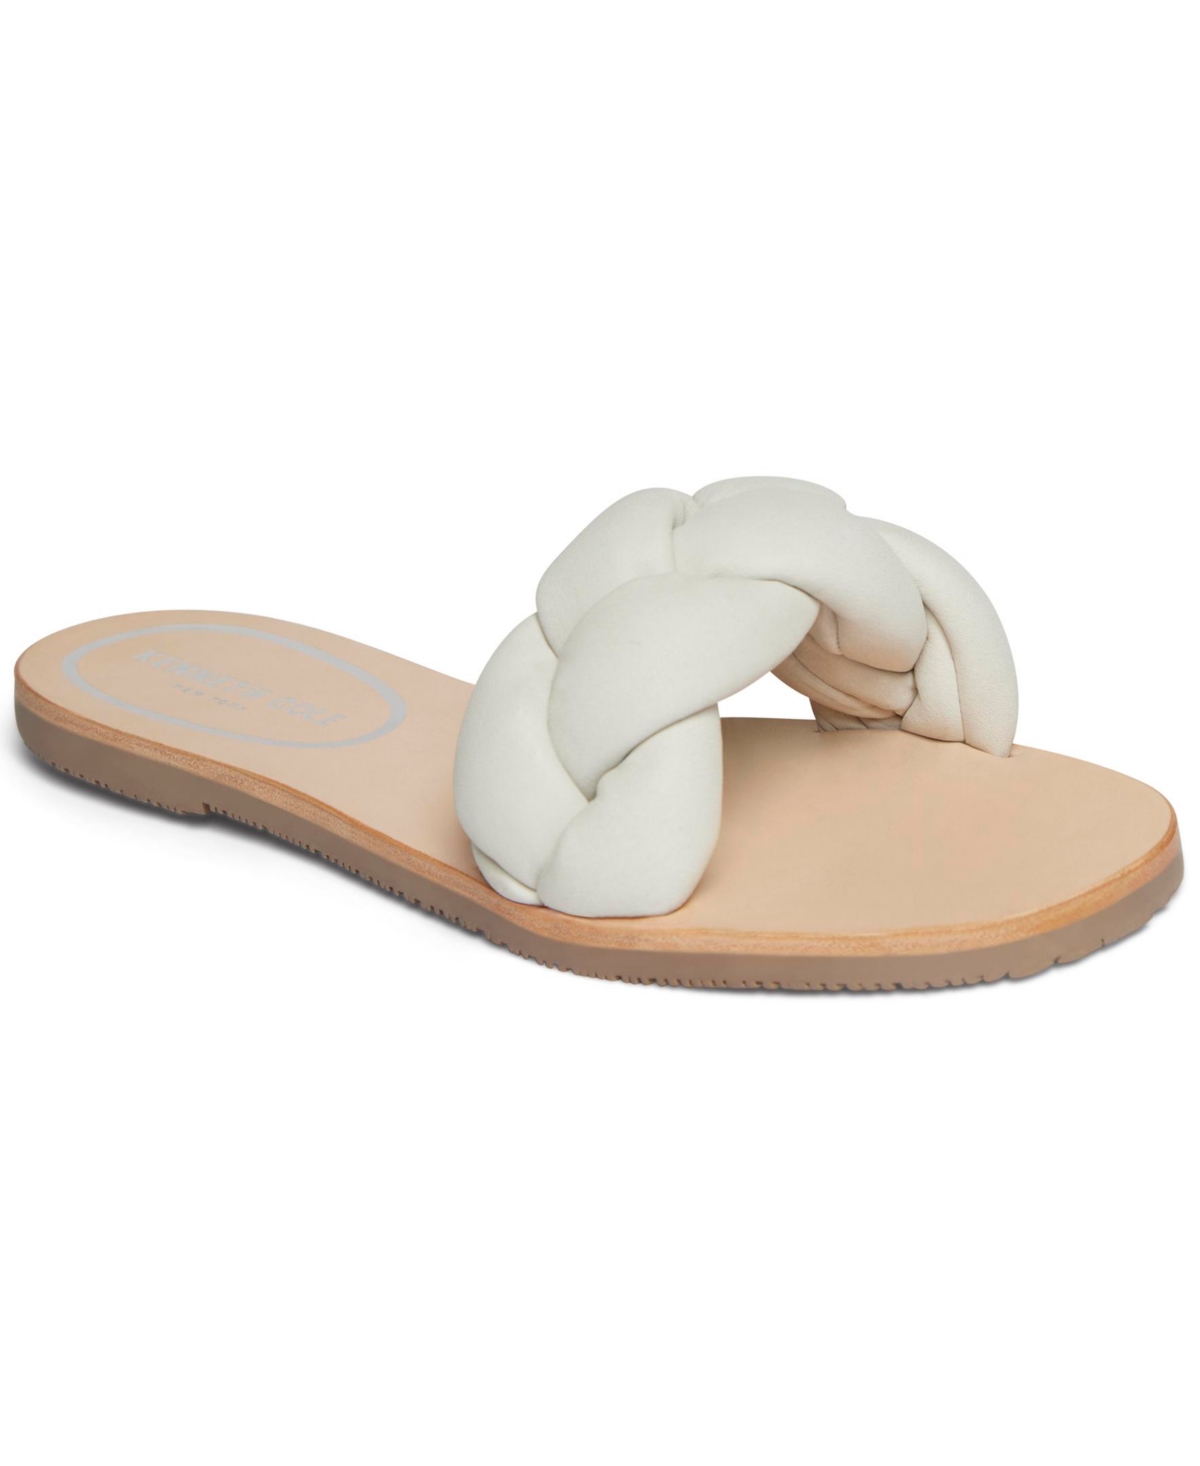 Women's Nellie Braid Slide Sandals - White